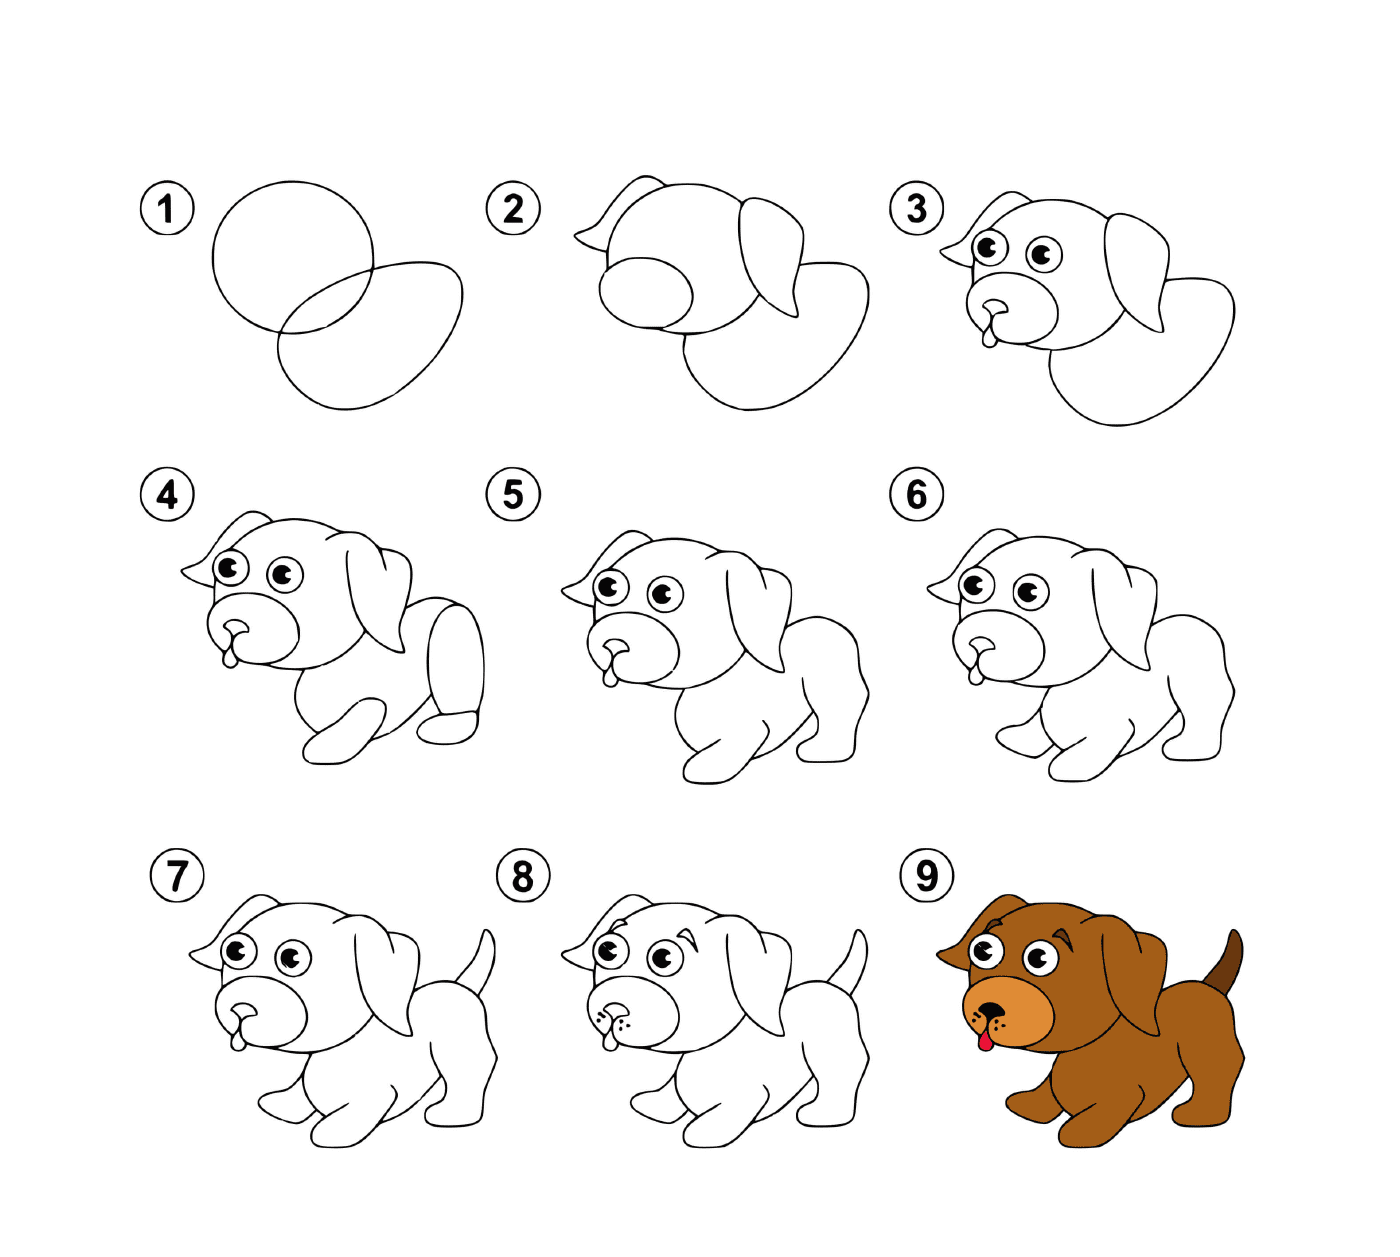  Instrucciones paso a paso para dibujar un cachorro 